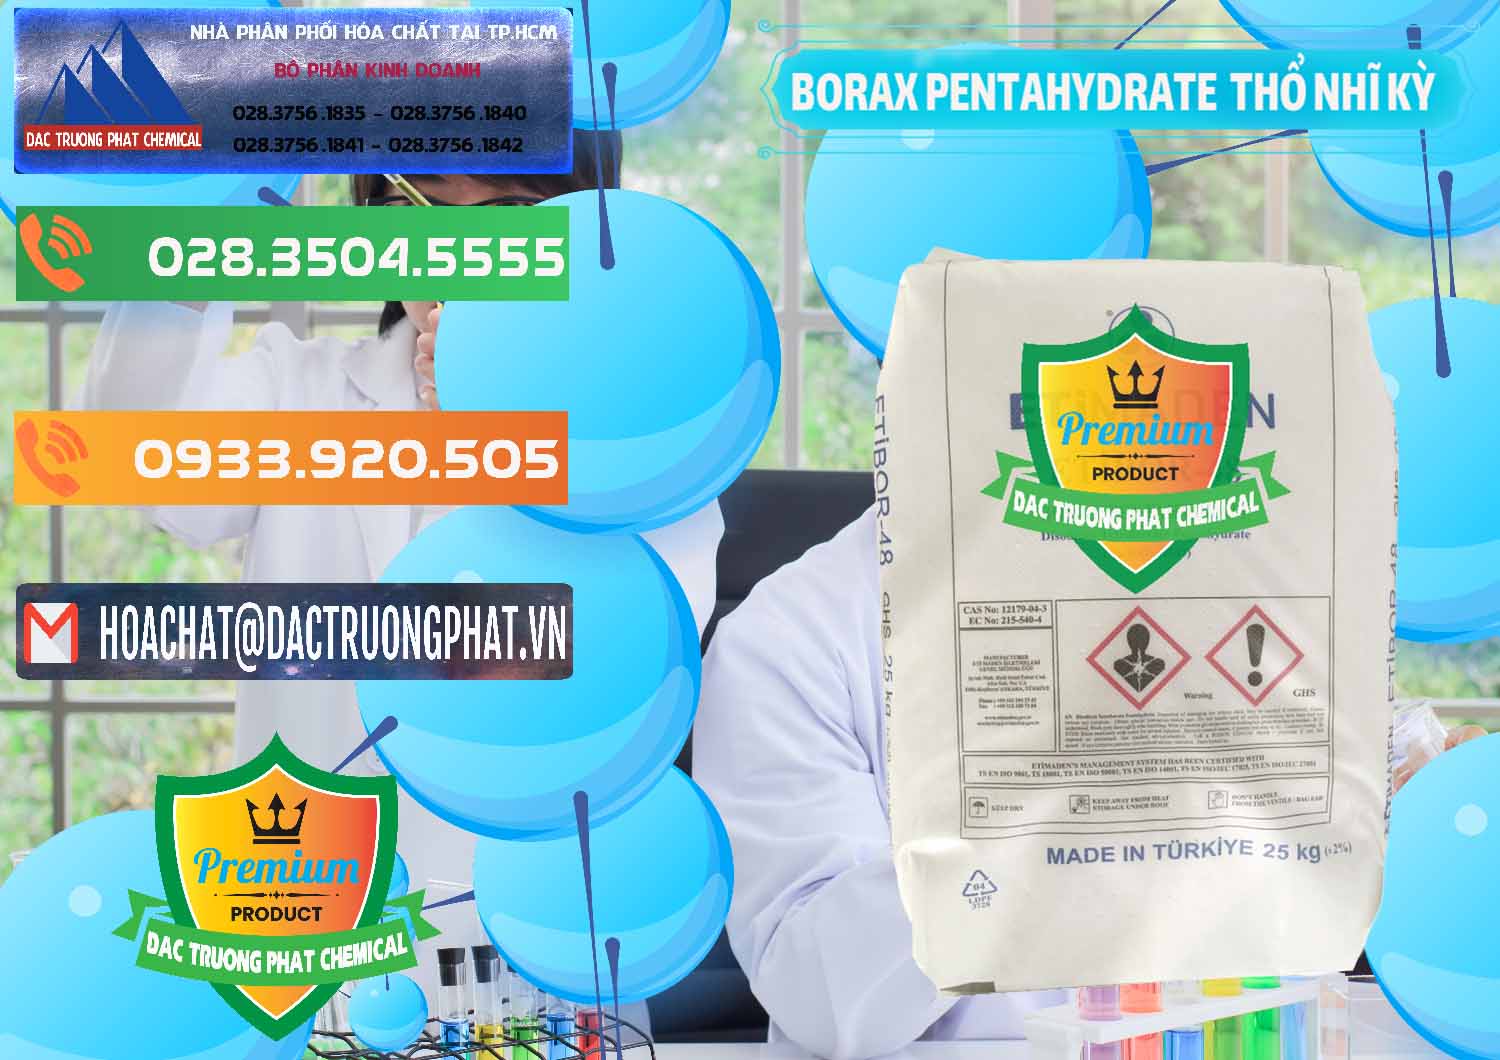 Đơn vị bán và cung cấp Borax Pentahydrate Thổ Nhĩ Kỳ Turkey - 0431 - Cty chuyên phân phối _ bán hóa chất tại TP.HCM - hoachatxulynuoc.com.vn